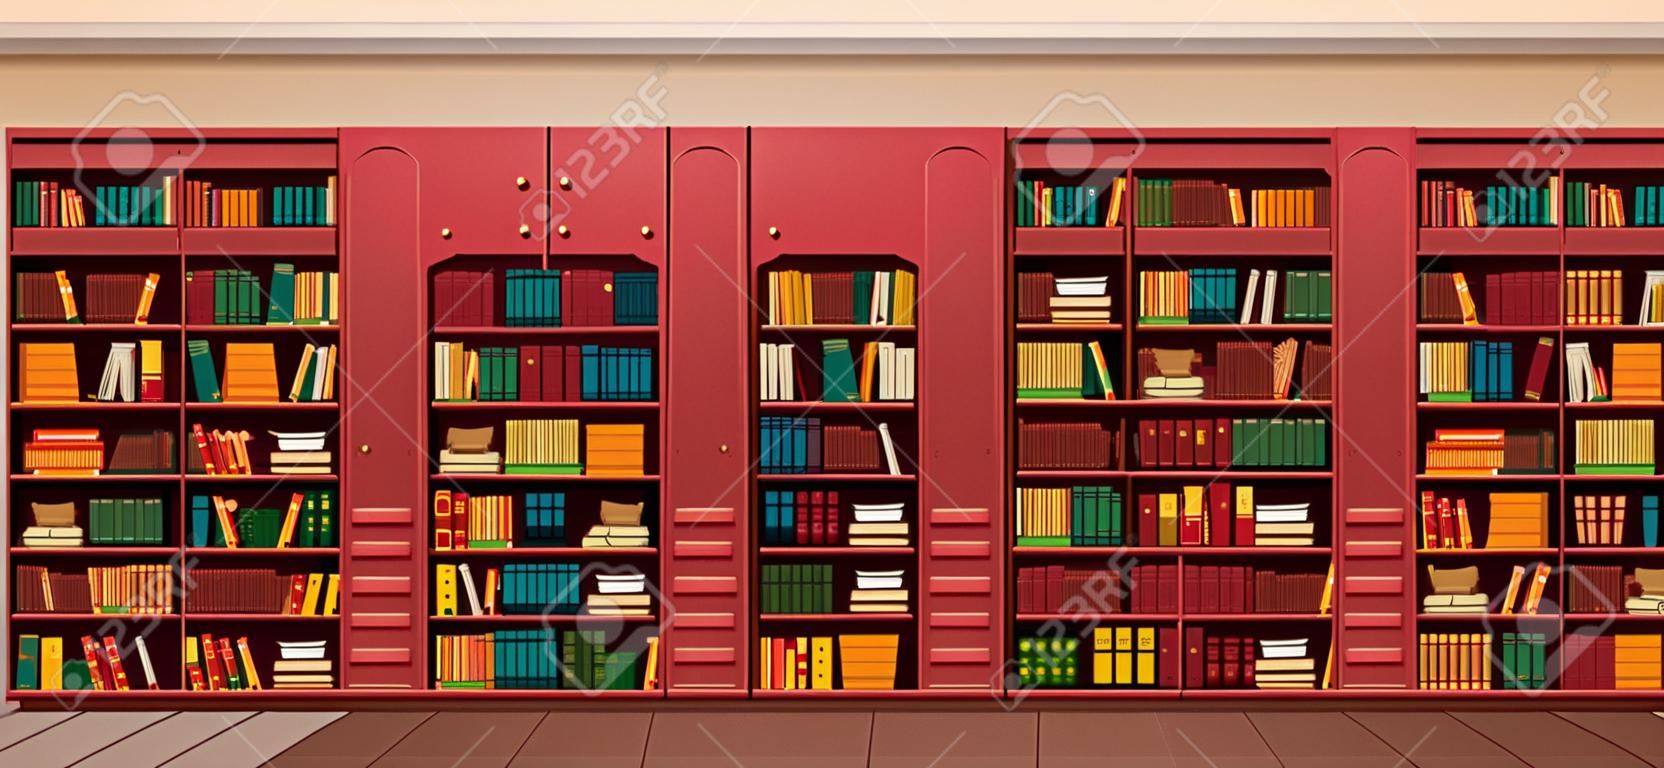 Vector illustration library shelves bookshelves library flat style.